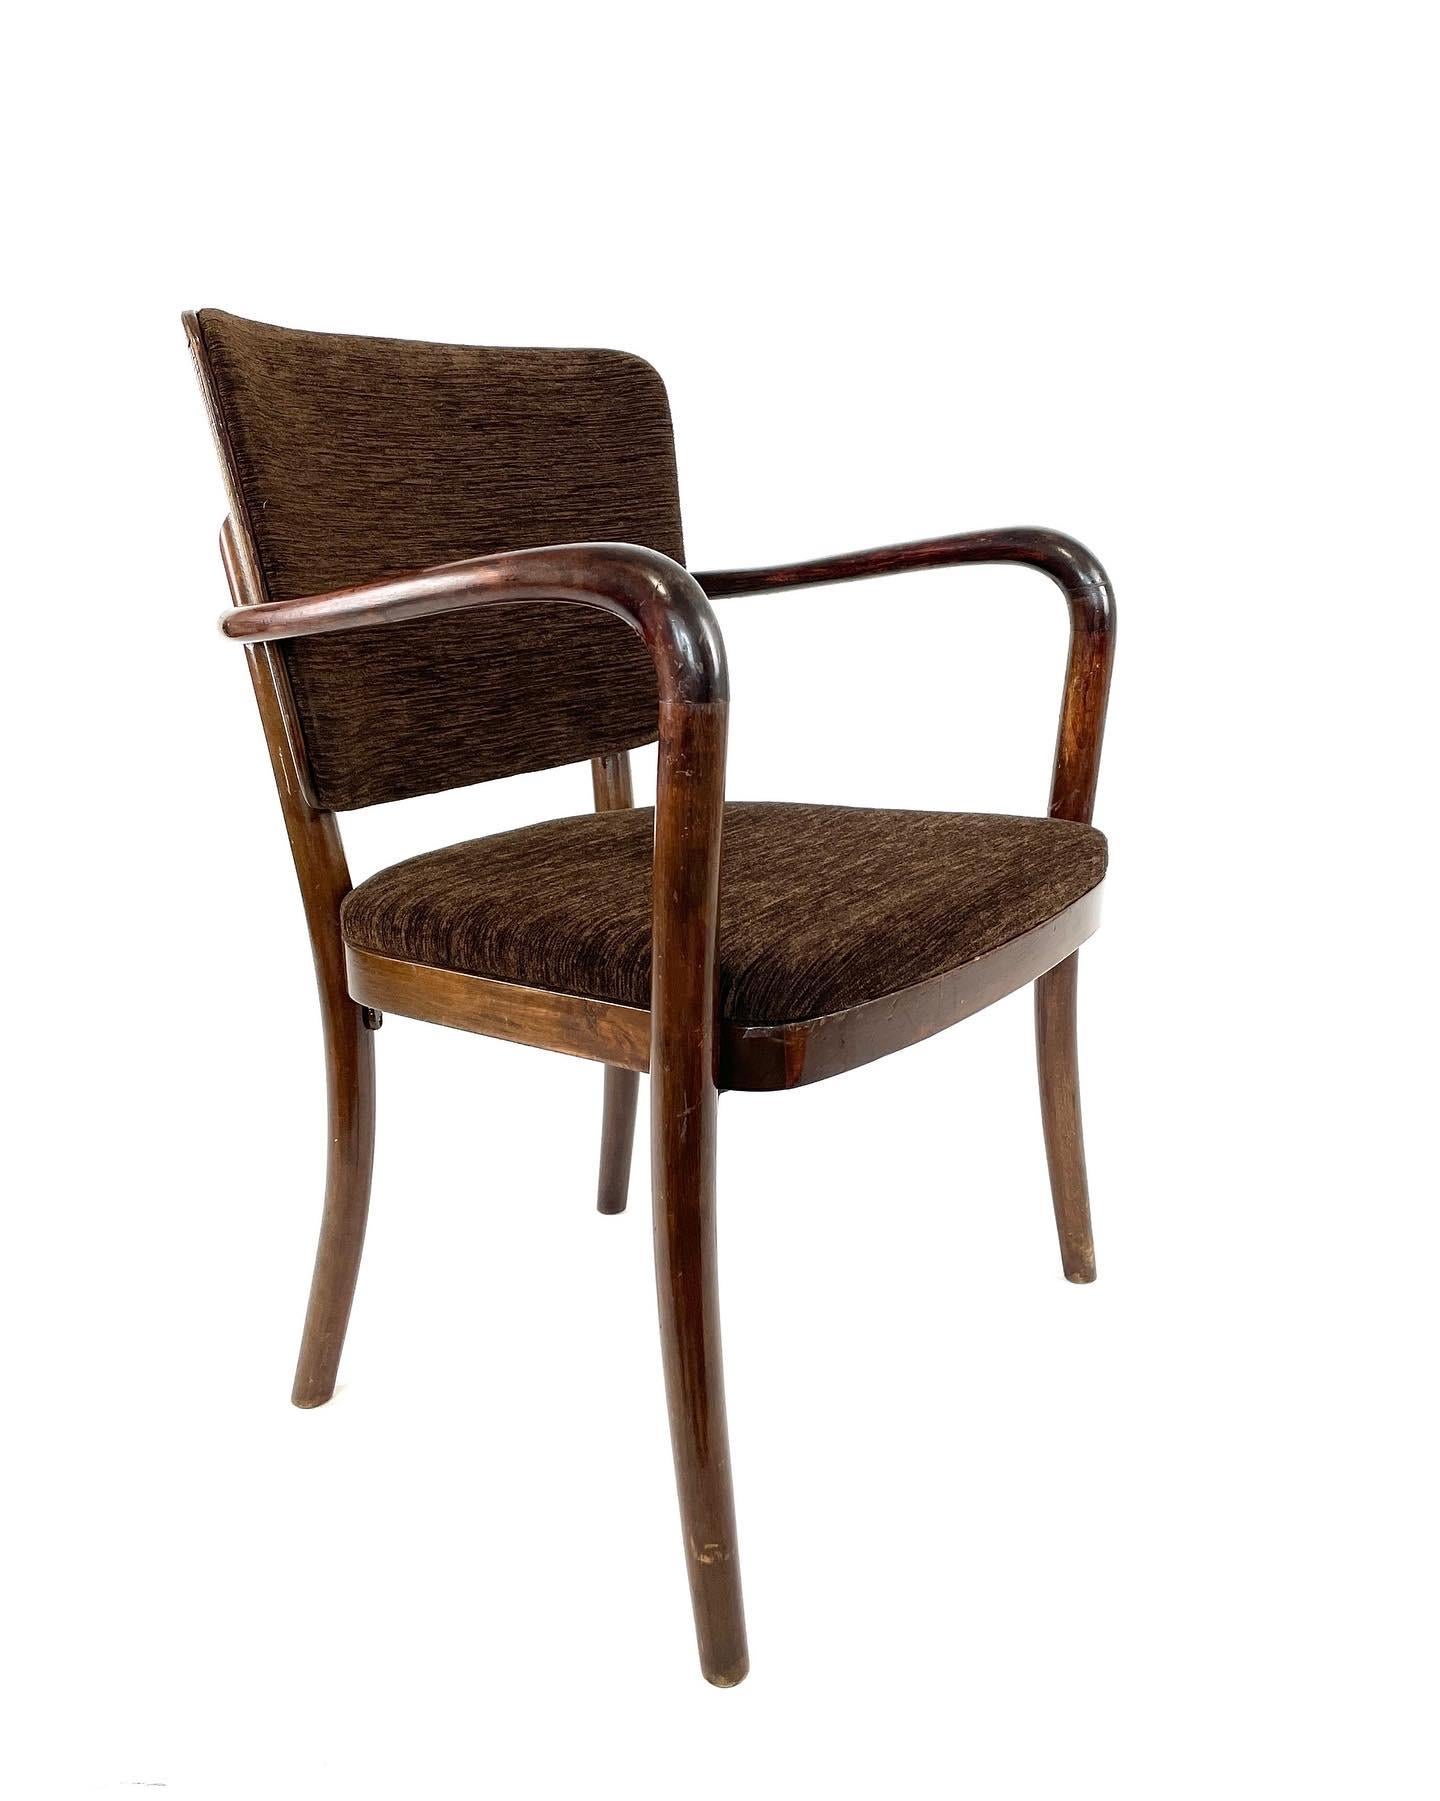 Scandinavian Modern Alvar Aalto Finnish Modern Chair for Wilh Schauman, Finland, 1939 For Sale